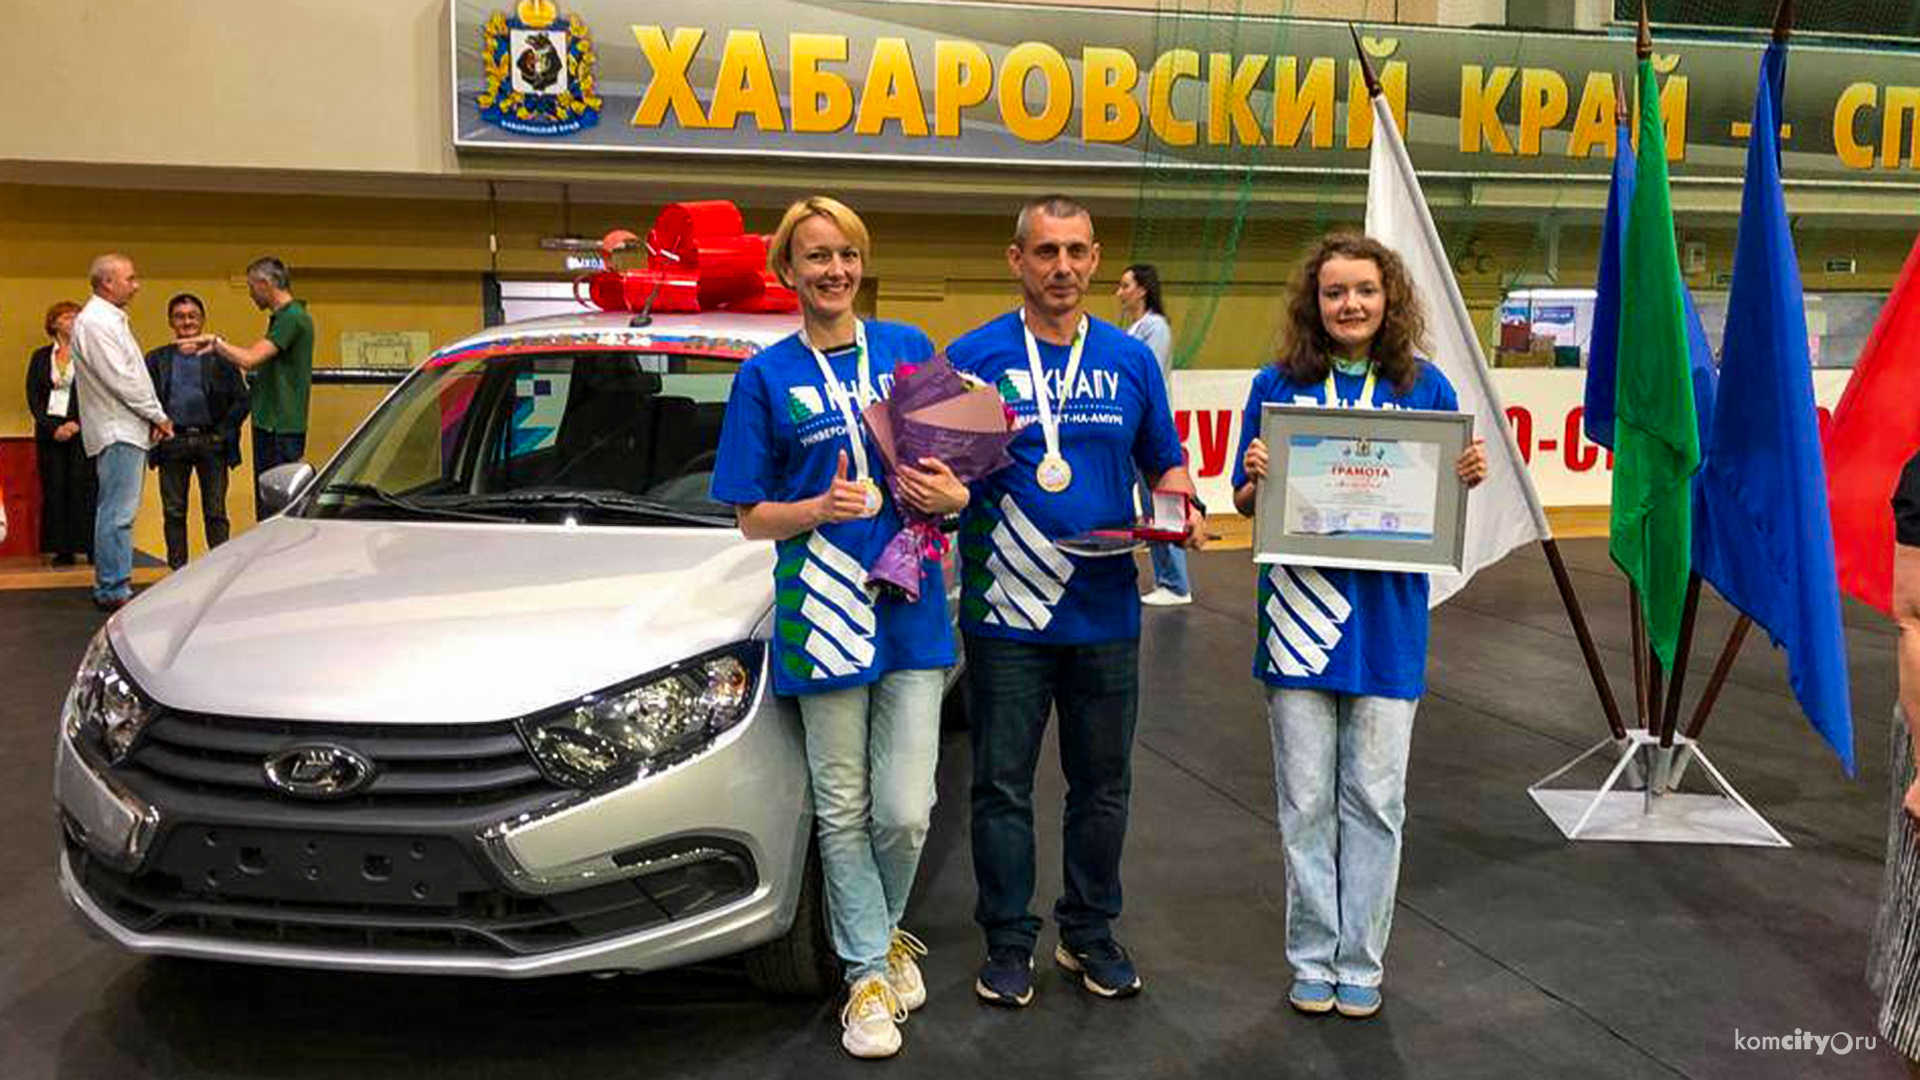 Семья из Комсомольска-на-Амуре выиграла Ладу Гранту на краевых соревнованиях в «Азарт. Здоровье. Отдых»